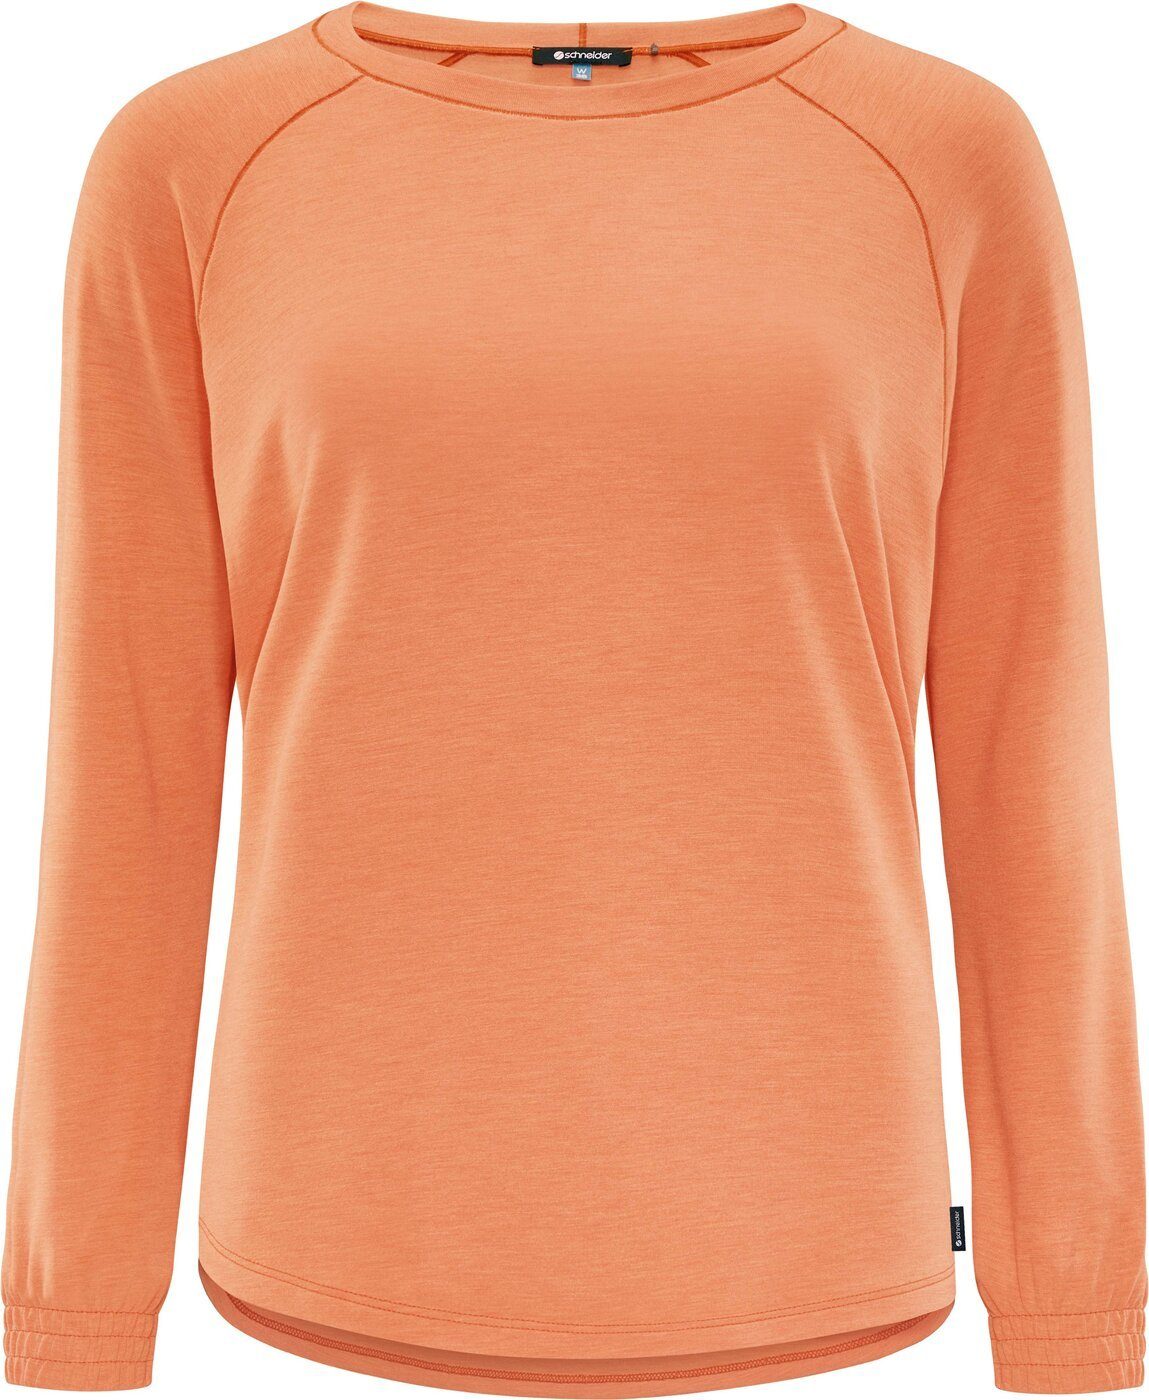 ENISSAW-SWEATSHIRT SCHNEIDER SUNDIAL-MELIERT Sportswear Sweatshirt